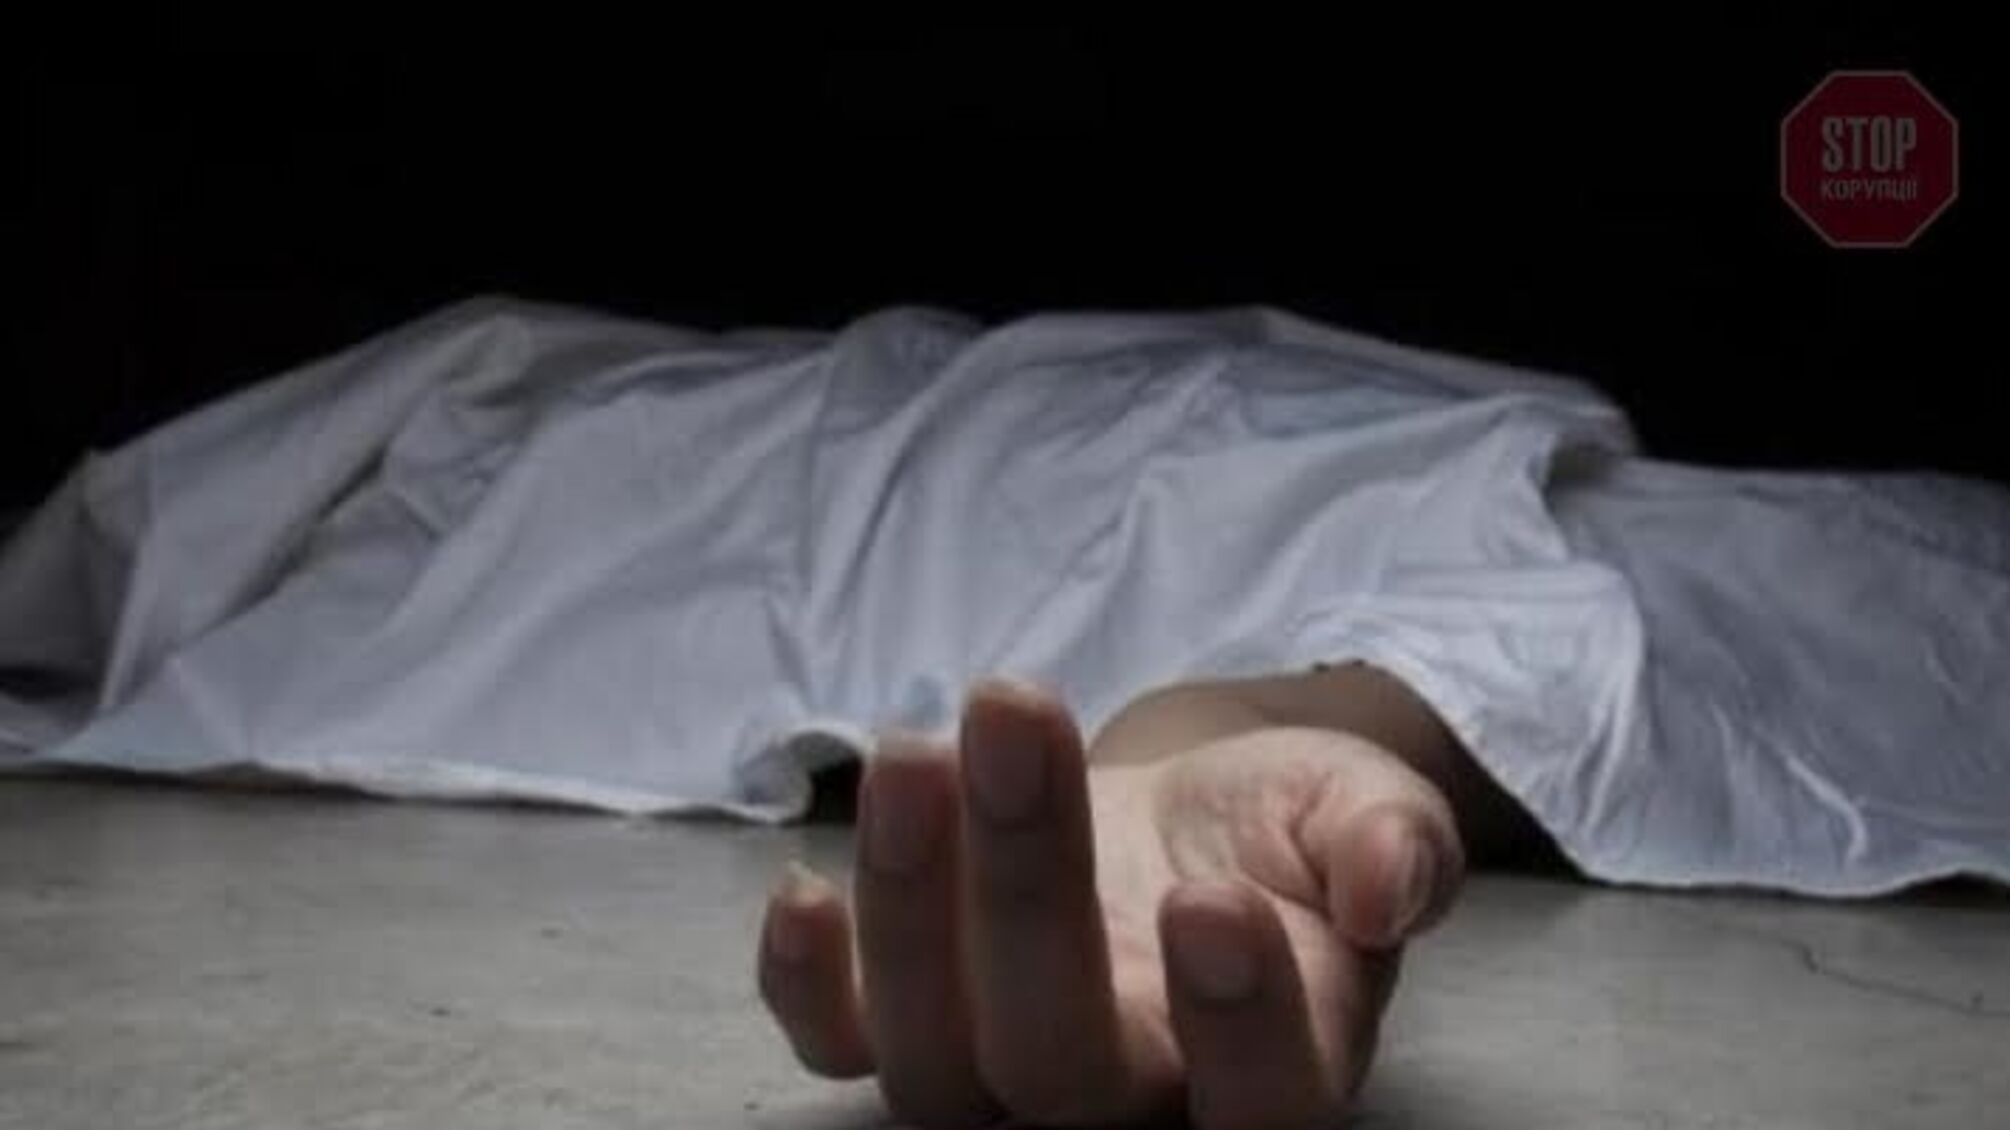 Мешканець Харкова знімав на телефон помираючого чоловіка: поліція відкрила кримінальне провадження